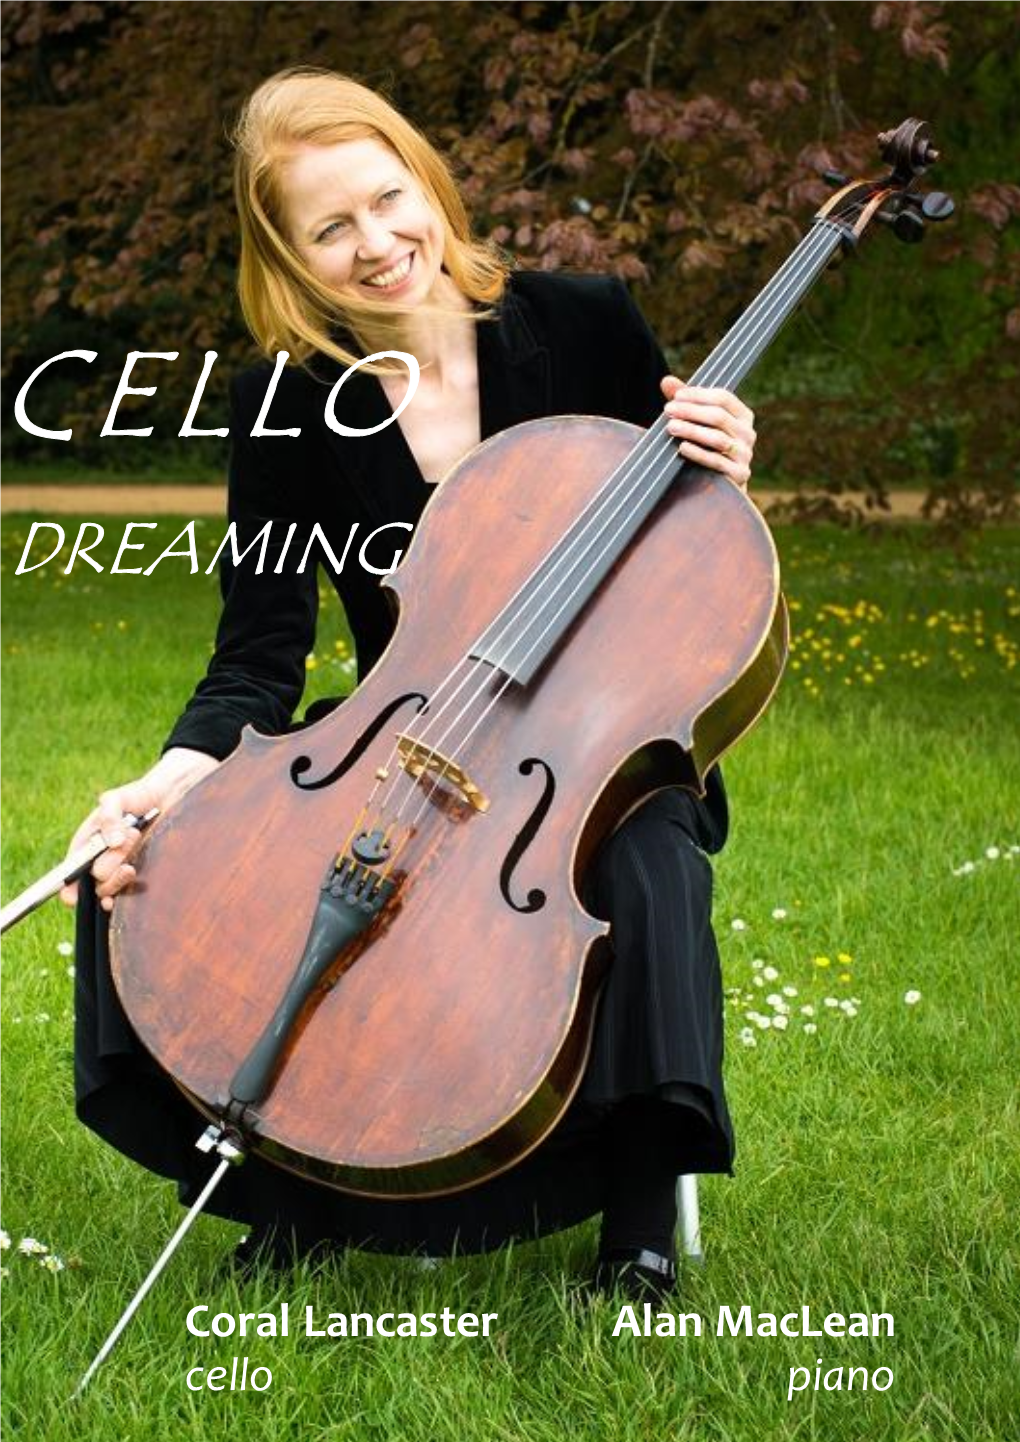 Cello Dreaming Programme Notes 27 Sept 2015